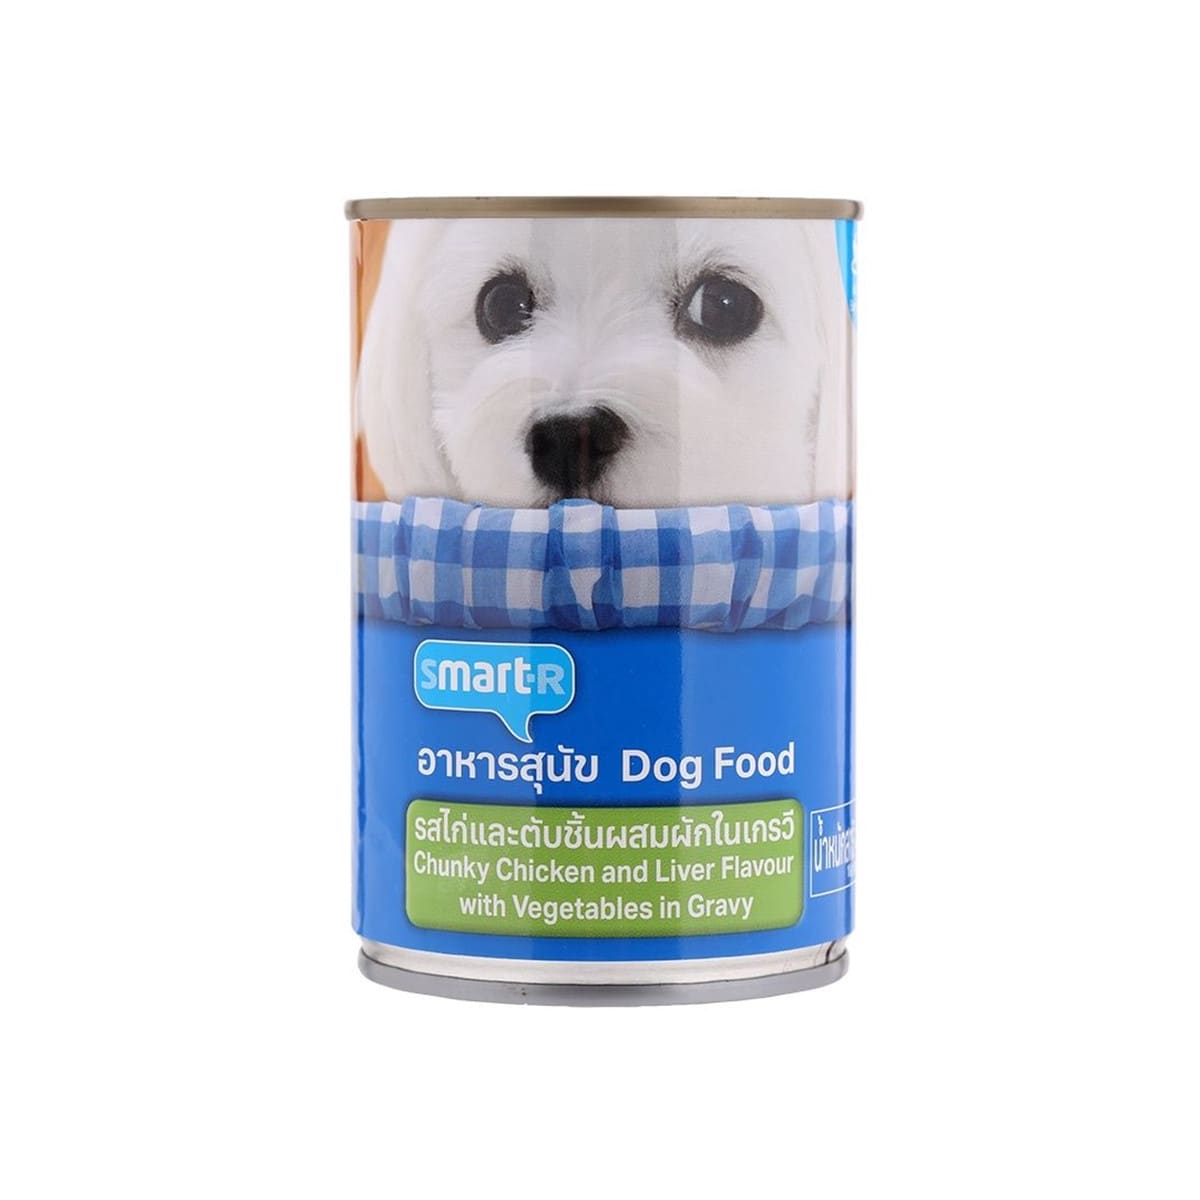 Smarter สมาร์ทเตอร์ อาหารเปียก สำหรับสุนัข รสไก่และตับชิ้นผสมผักในเกรวี่ 400 g_1